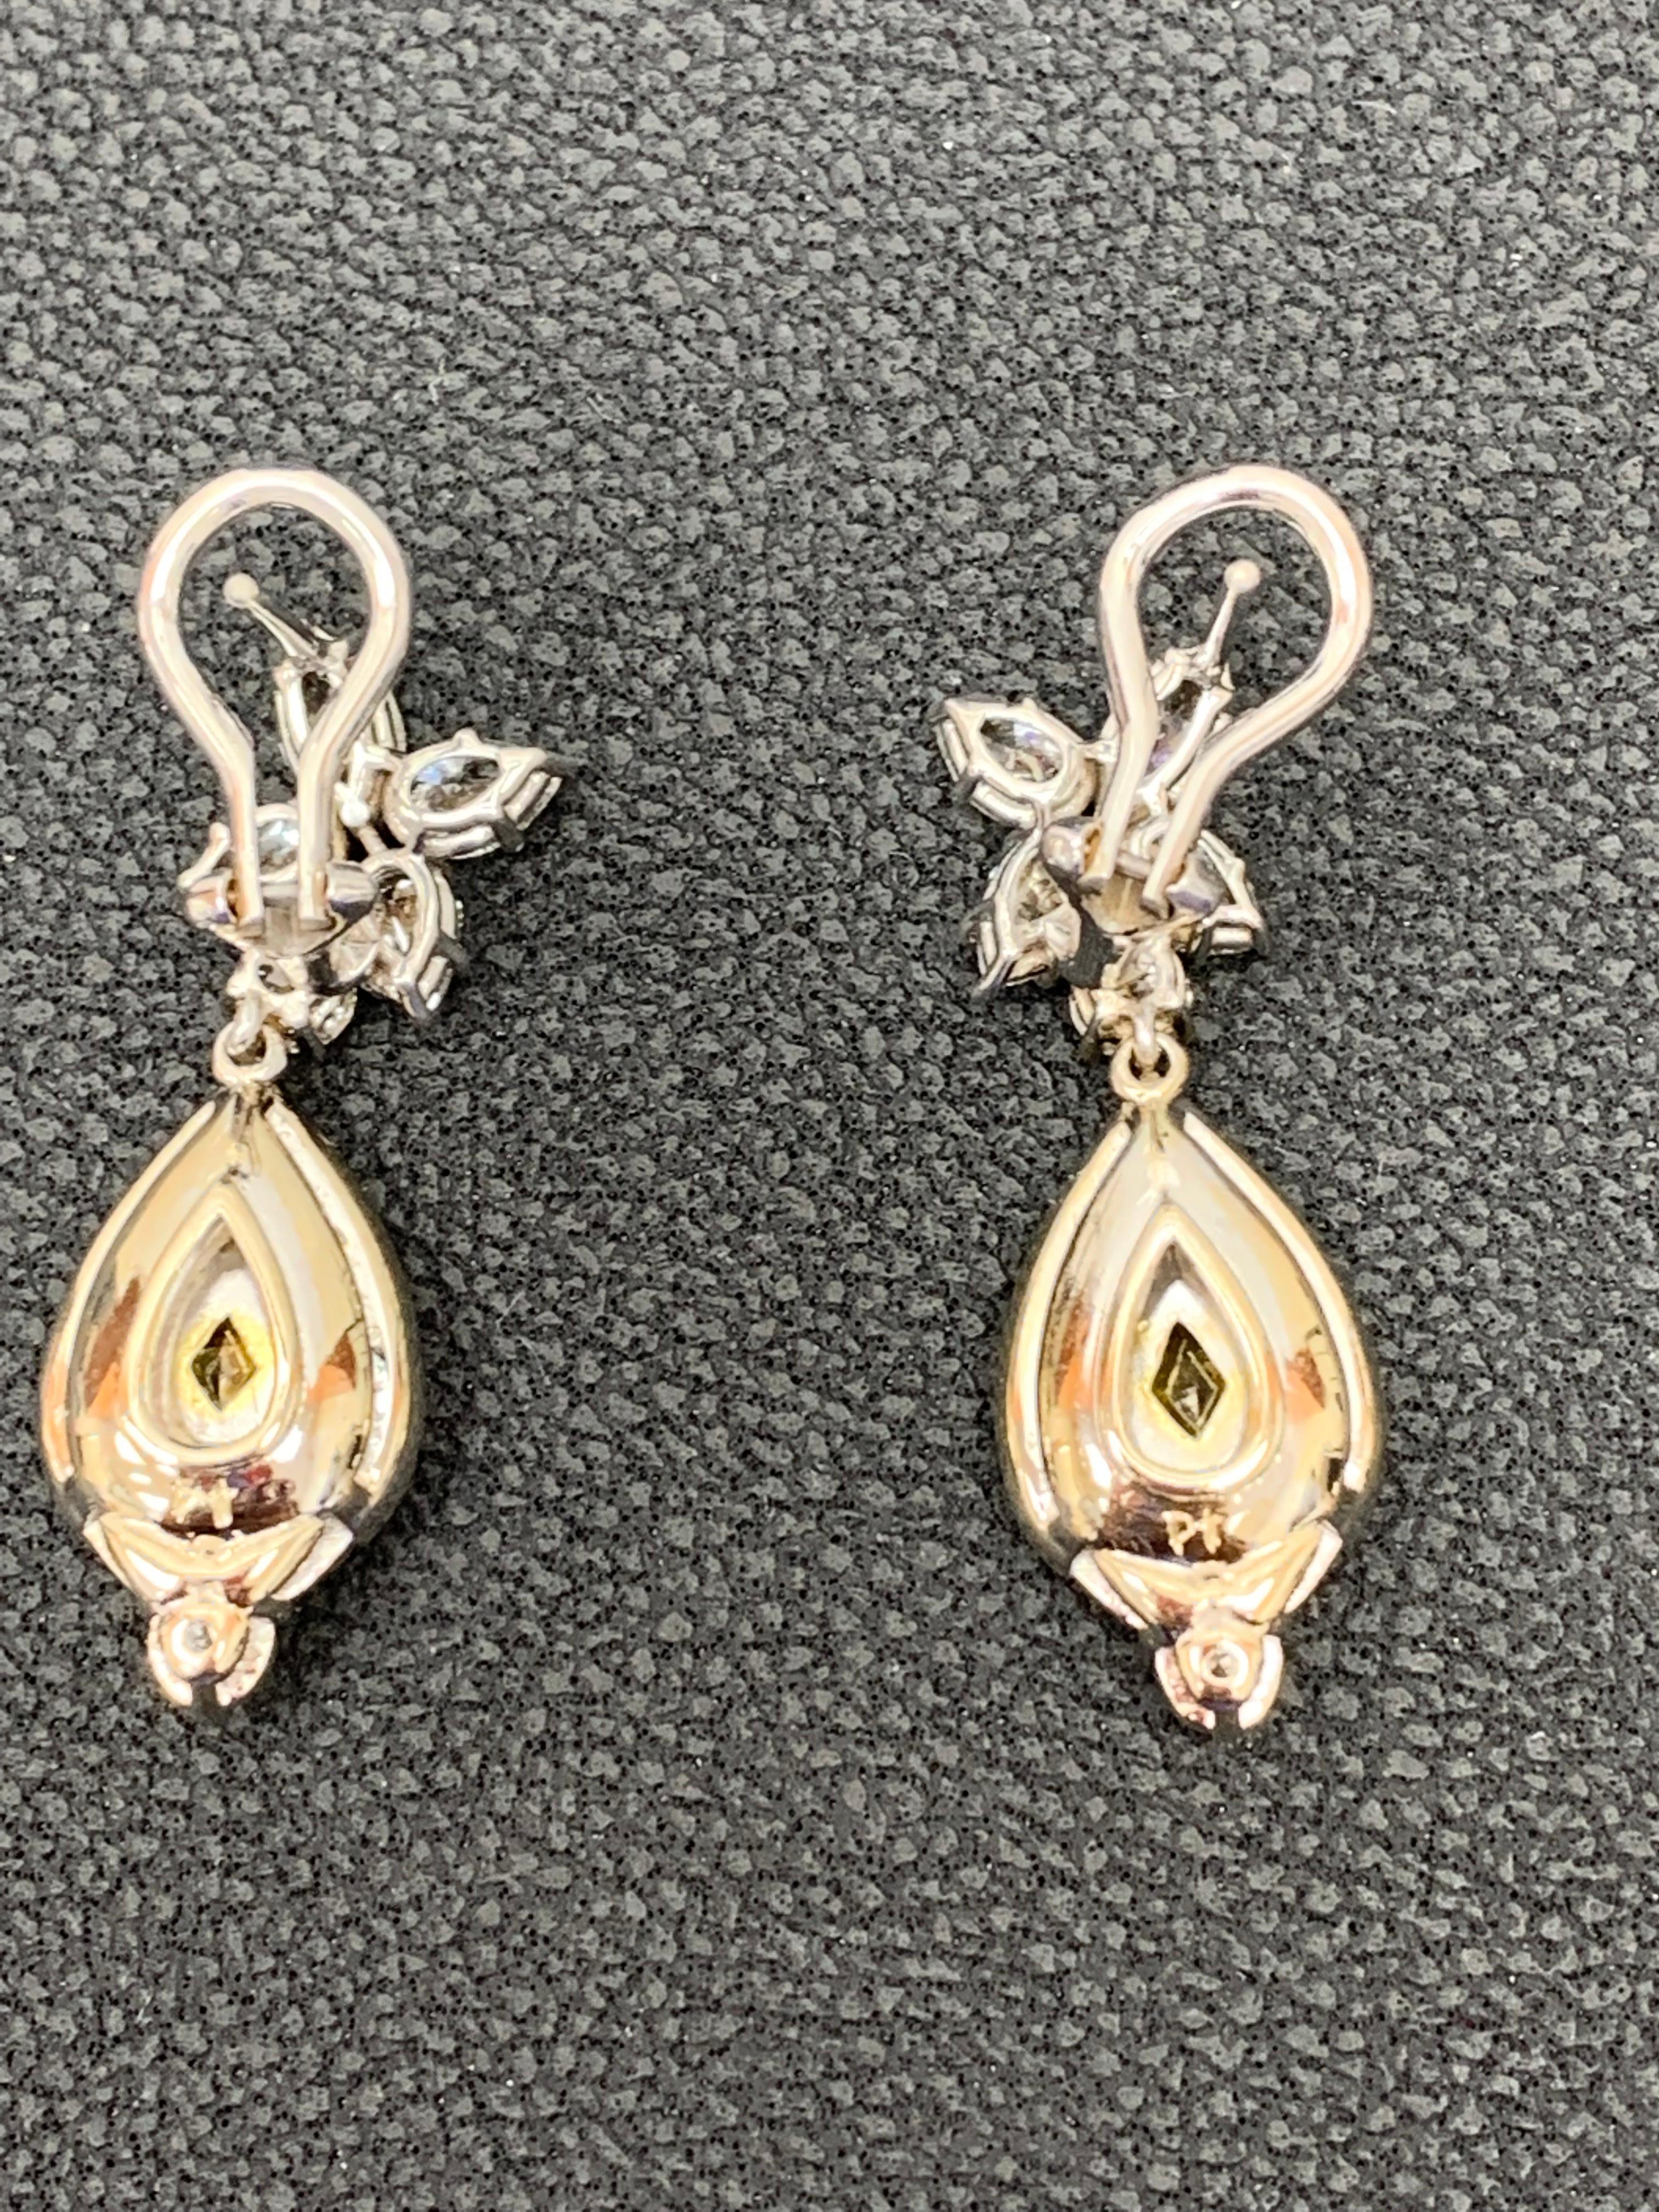 CERTIFIED 2.89 Carat Fancy Yellow Diamond Drop Earrings in 18K White Gold For Sale 5